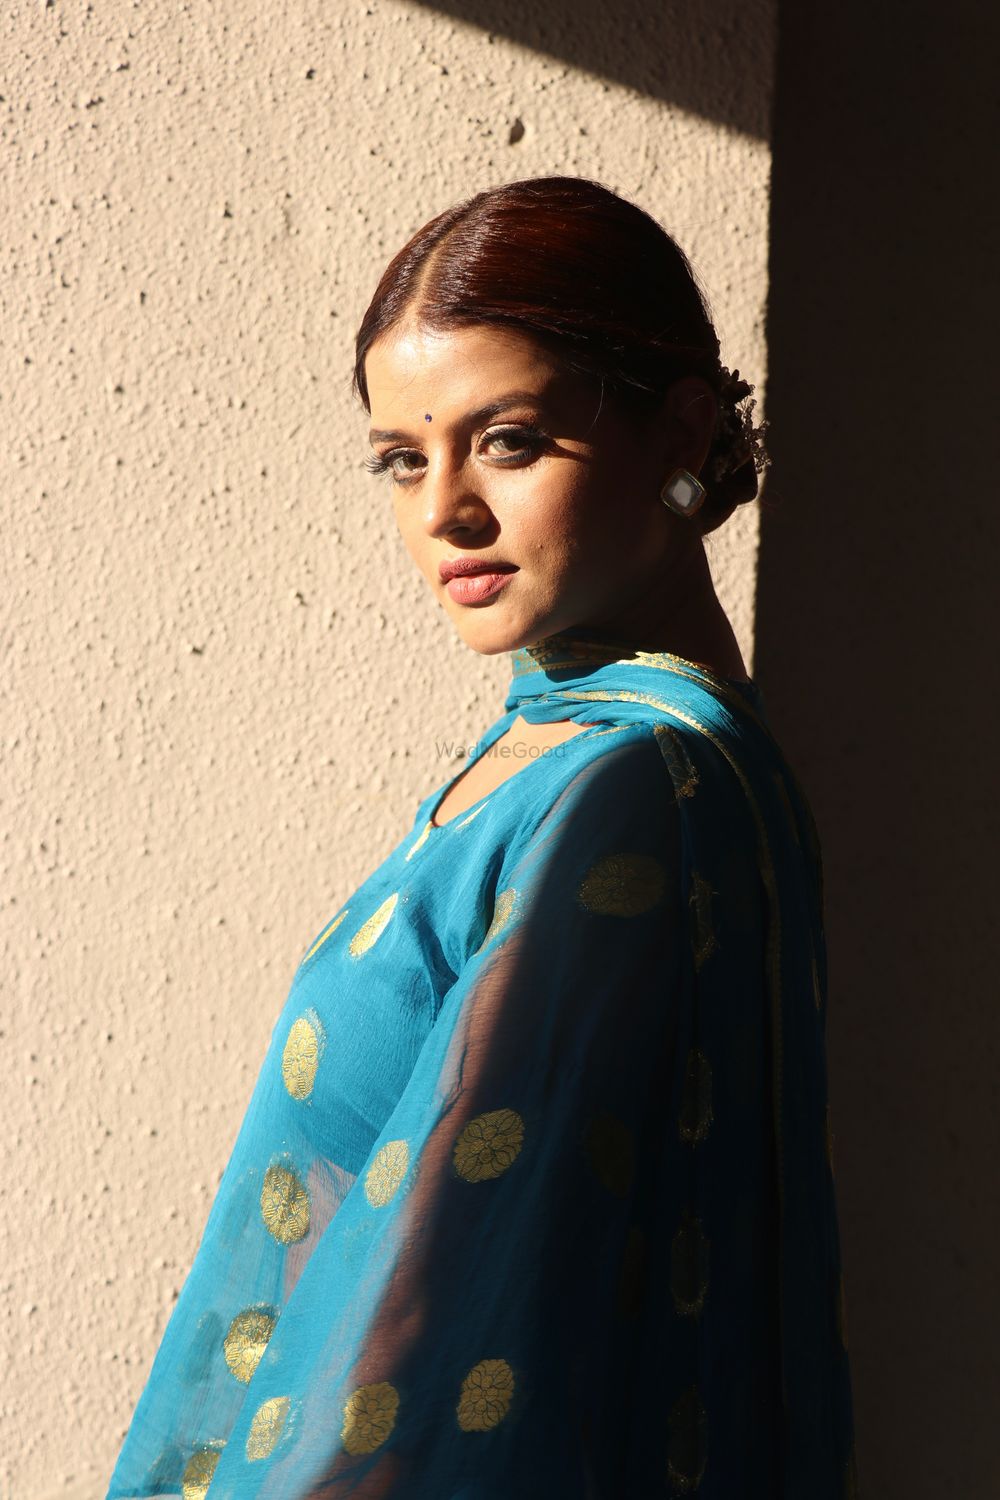 Photo From ACTRESS Mitaali nag (Afsar bitiya) (aashiqana) - By Makeup by Sapna Oswal